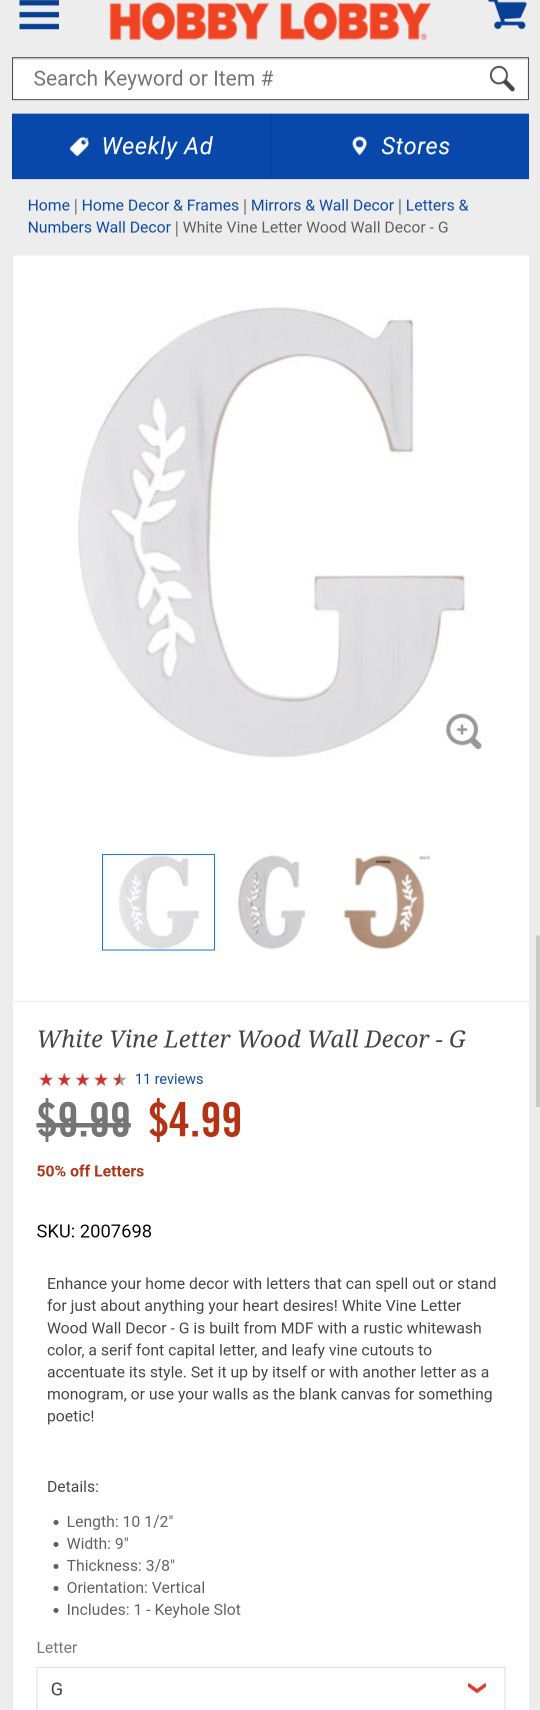 White Wood Letter - 3, Hobby Lobby